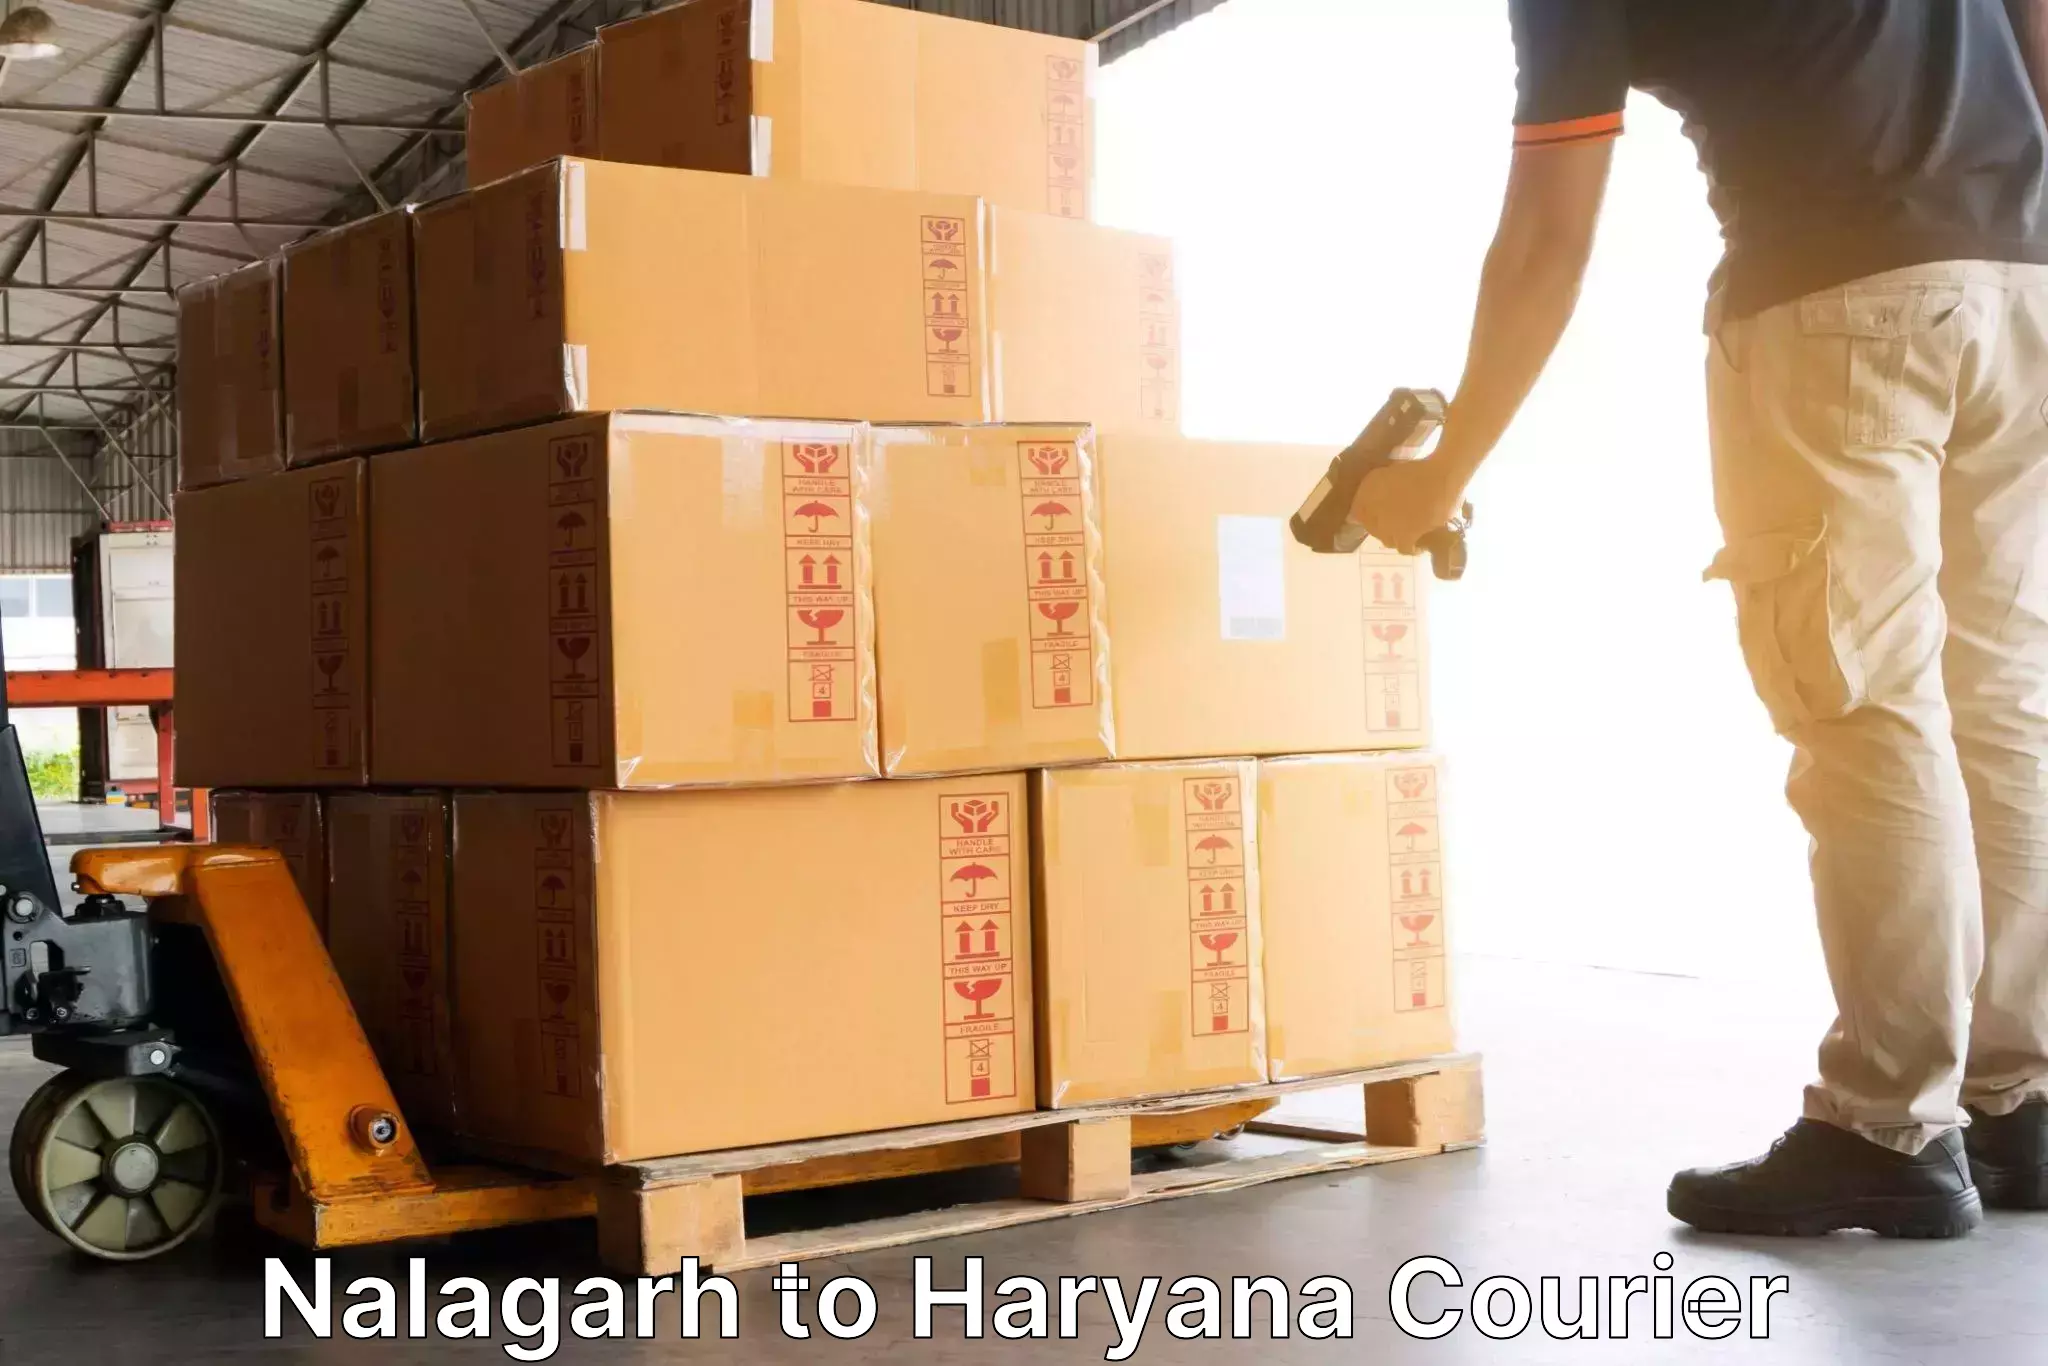 Air courier services Nalagarh to Haryana